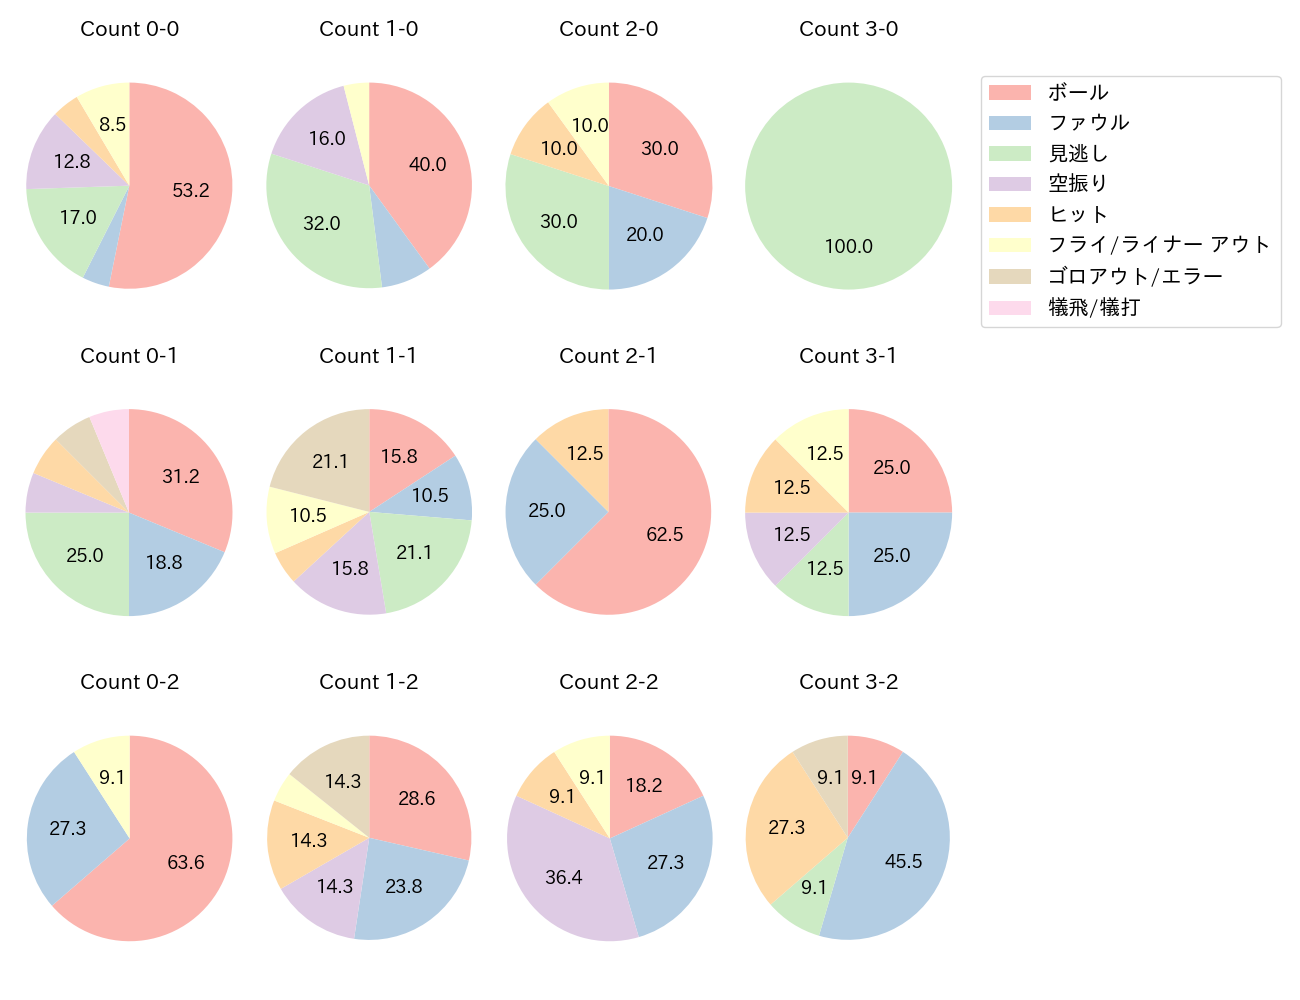 堂林 翔太の球数分布(2022年4月)